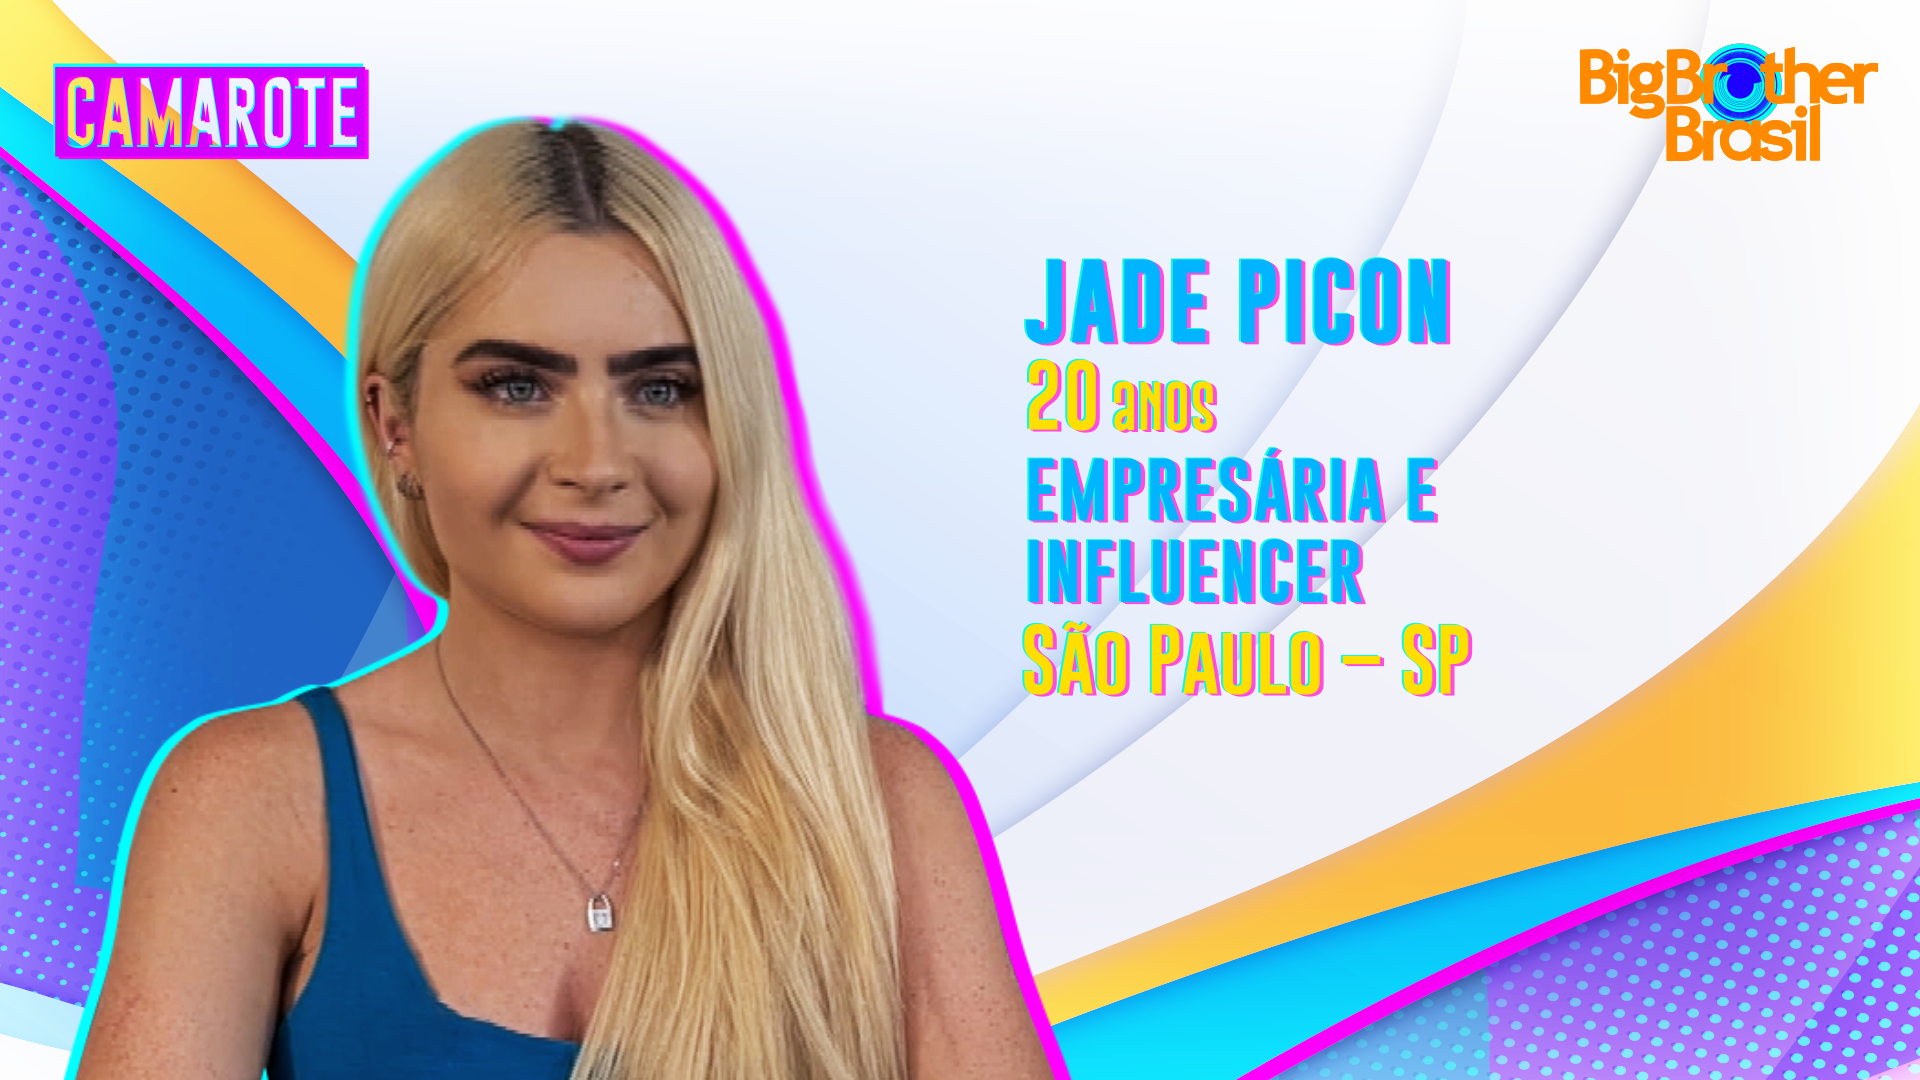 Jade Picon integra o grupo Camarote do BBB22 (Foto: Divulgação Globo)